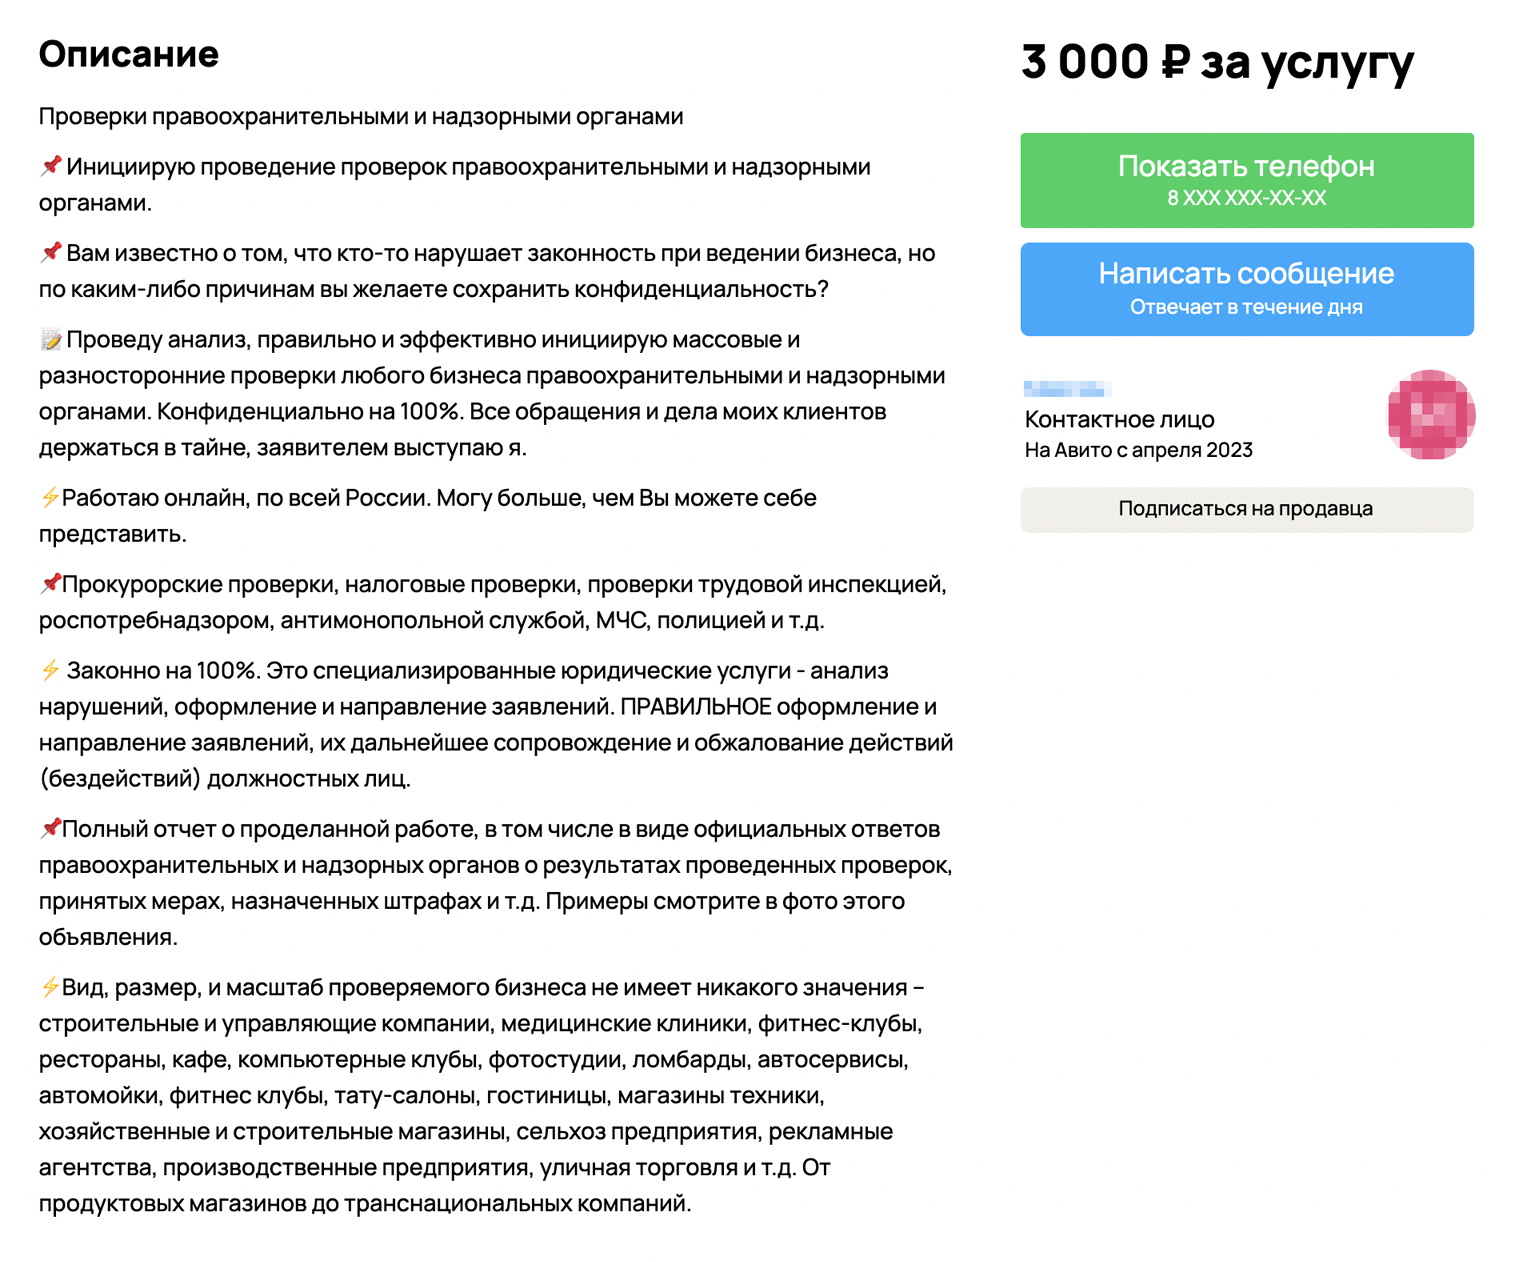 Более бюджетный вариант проверки, без внедрения, обойдется в 3000 ₽. Источник: avito.ru